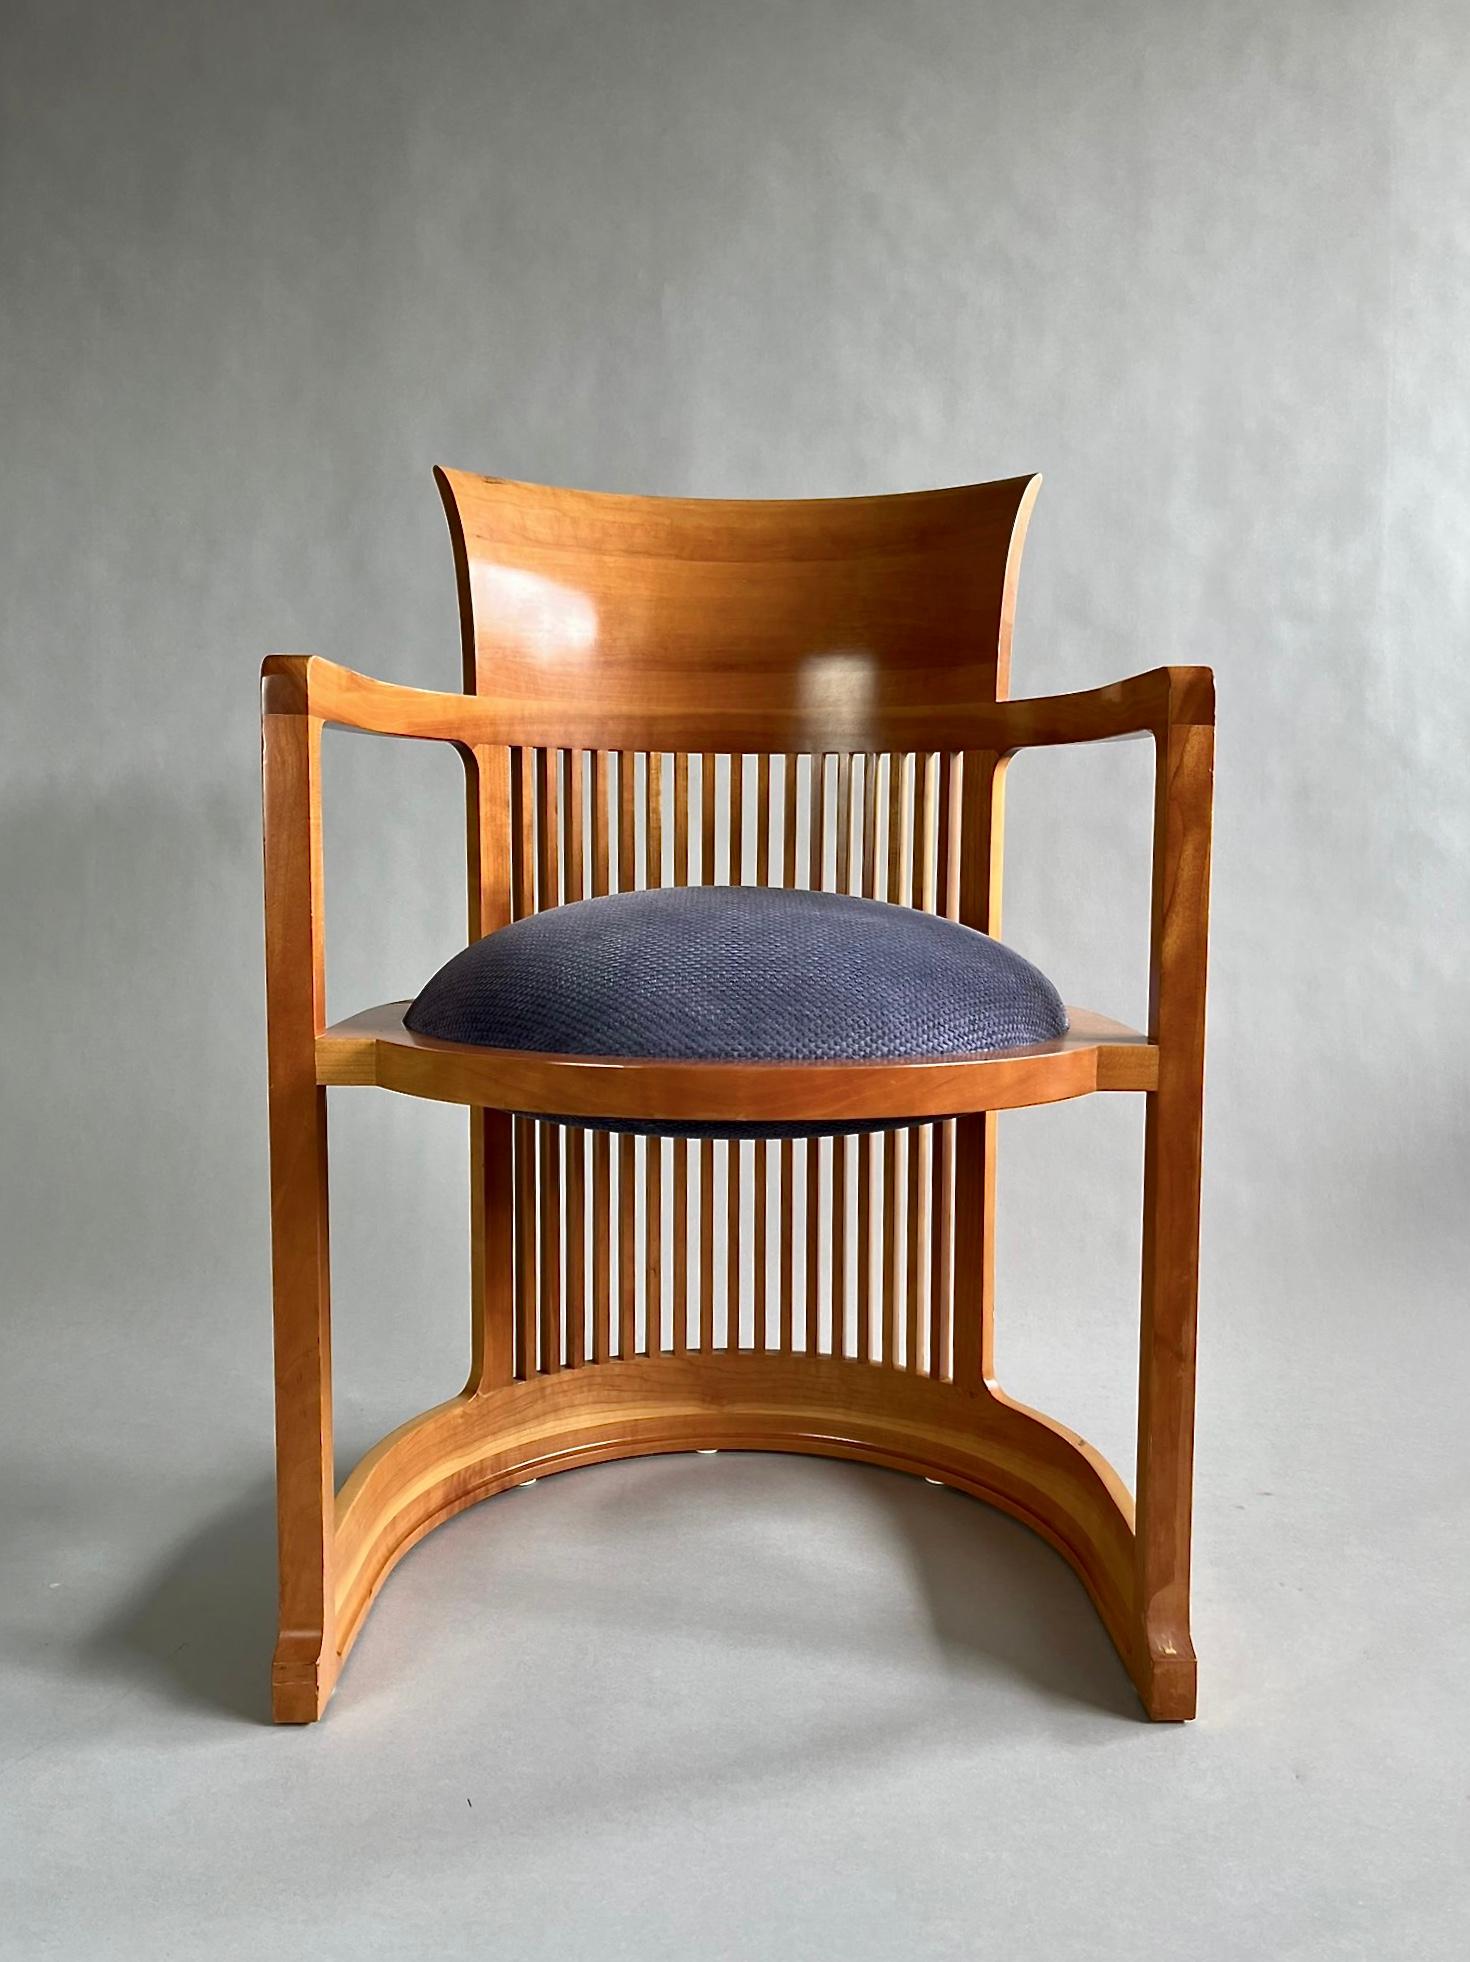 Satz von vier frühen Ausgaben der Iconic Barrel Stühle, die 1937 von Frank Lloyd Wright entworfen und von Cassina Italien in den späten 1980er und frühen 1990er Jahren hergestellt wurden. Das Set ist in gutem Vintage-Zustand, wie auf den Bildern zu